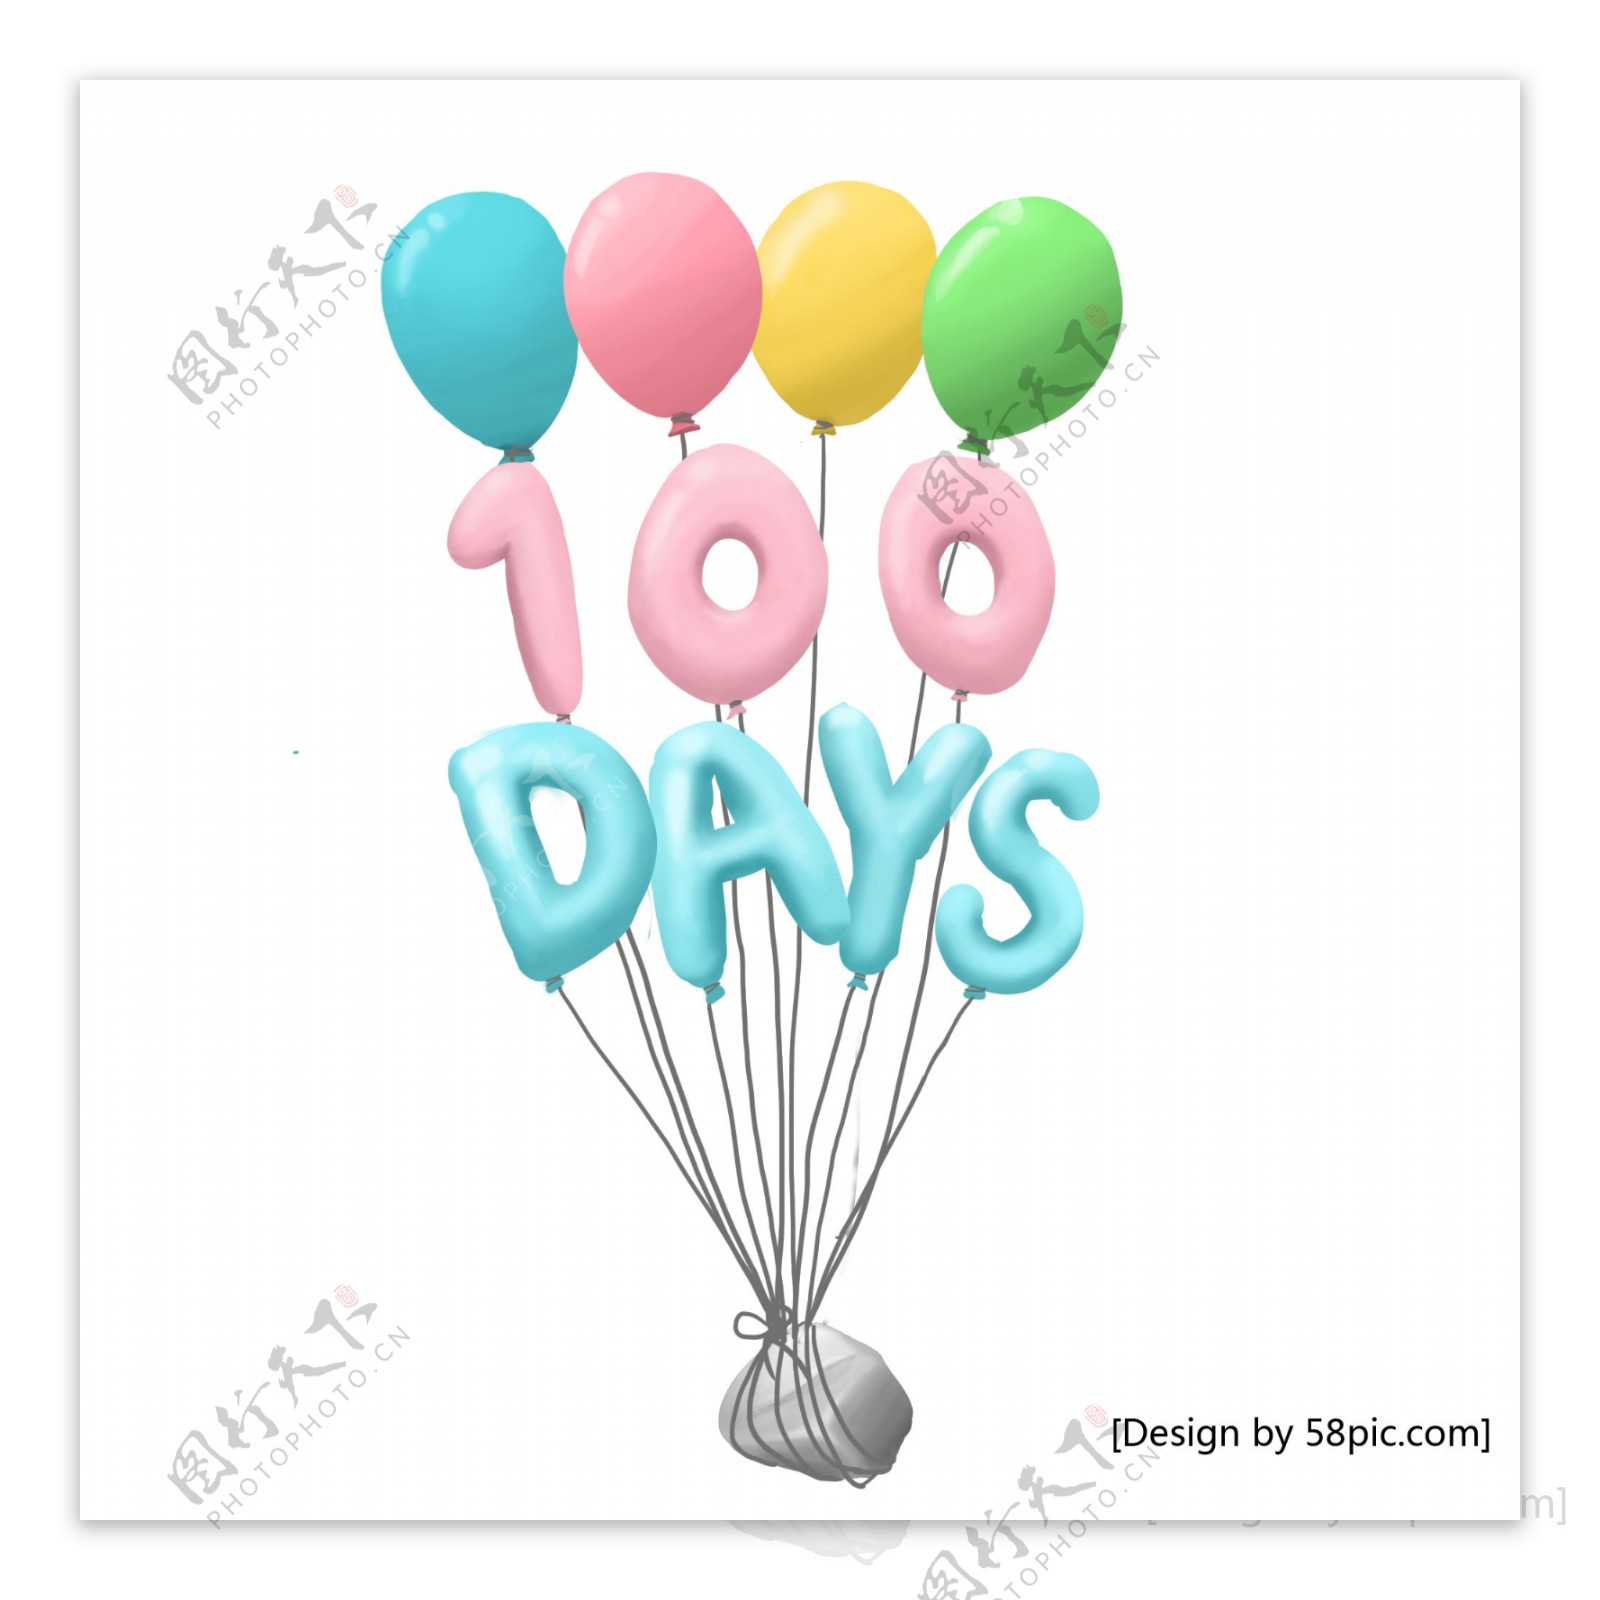 多彩气球百日宴100天卡通可爱清新手绘风